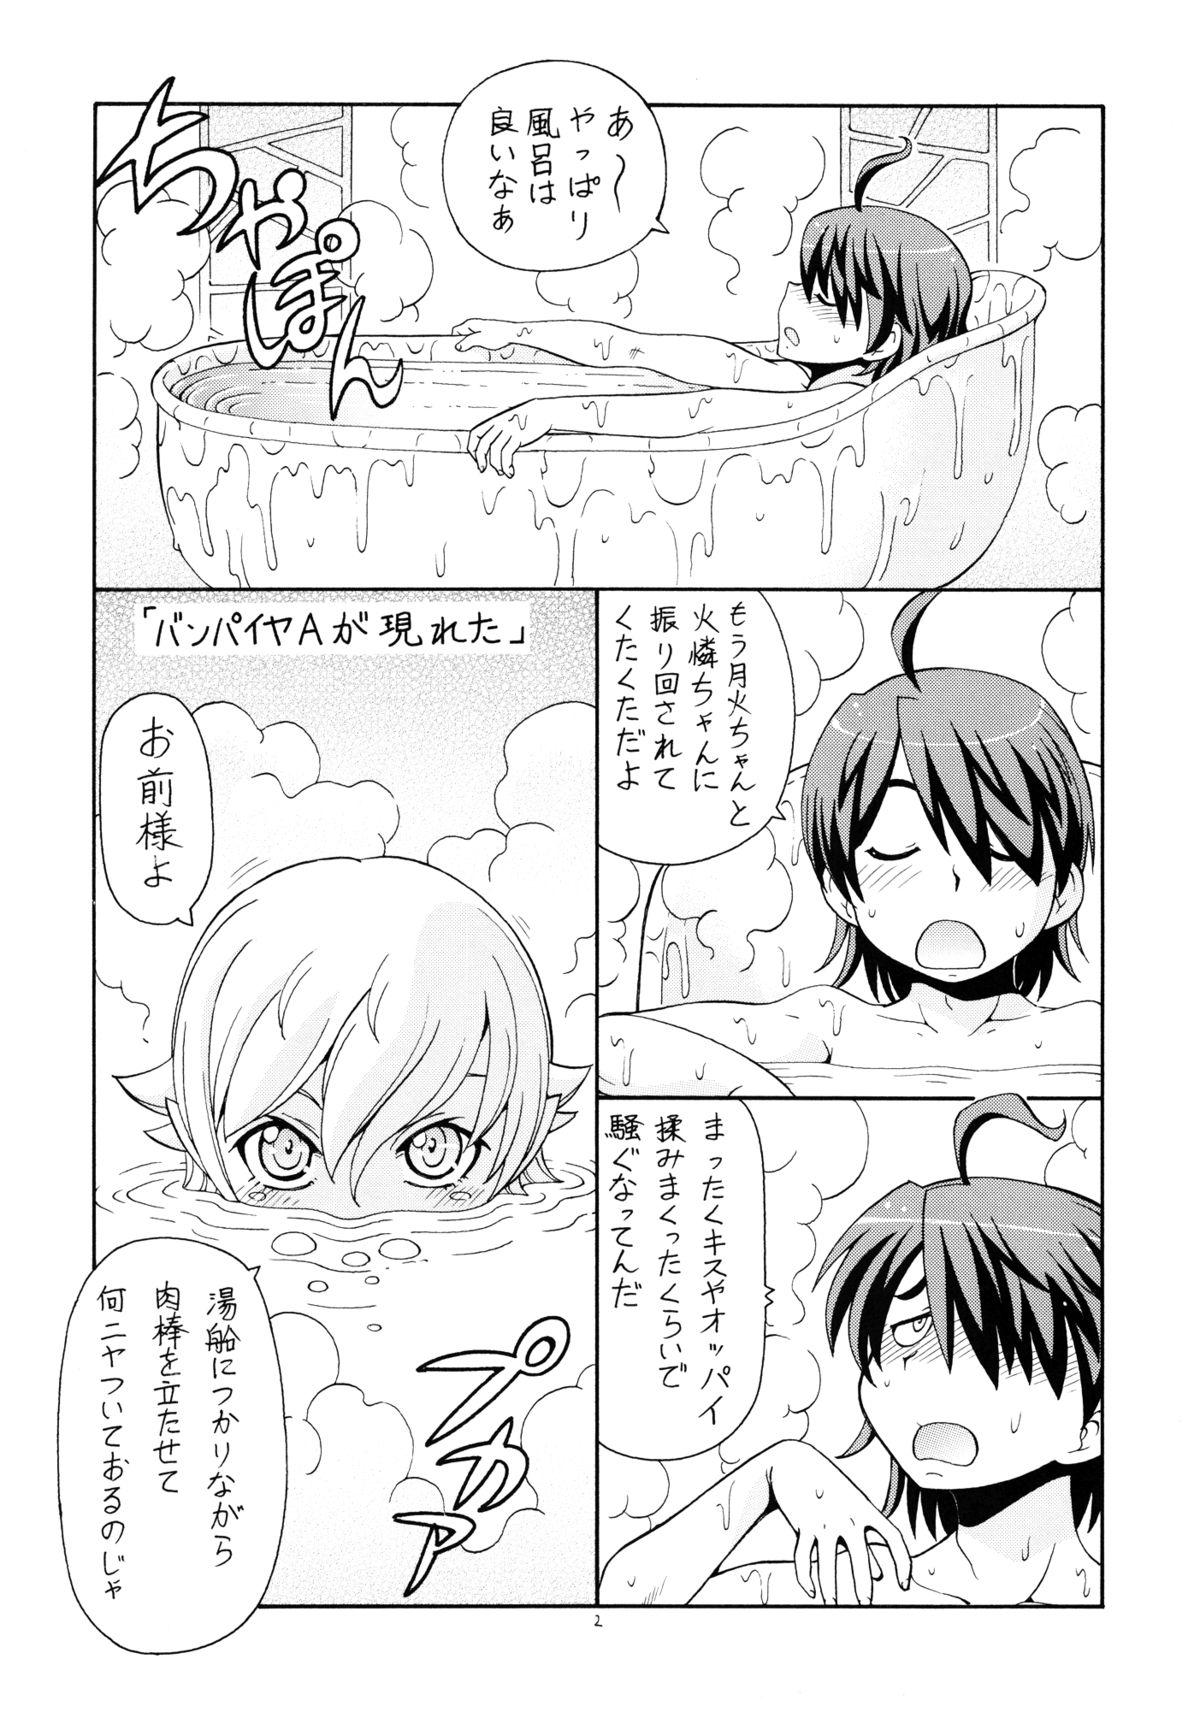 Jap Hito ni Hakanai to Kaite "Araragi" to Yomu 5&6 - Bakemonogatari Fucking - Page 3